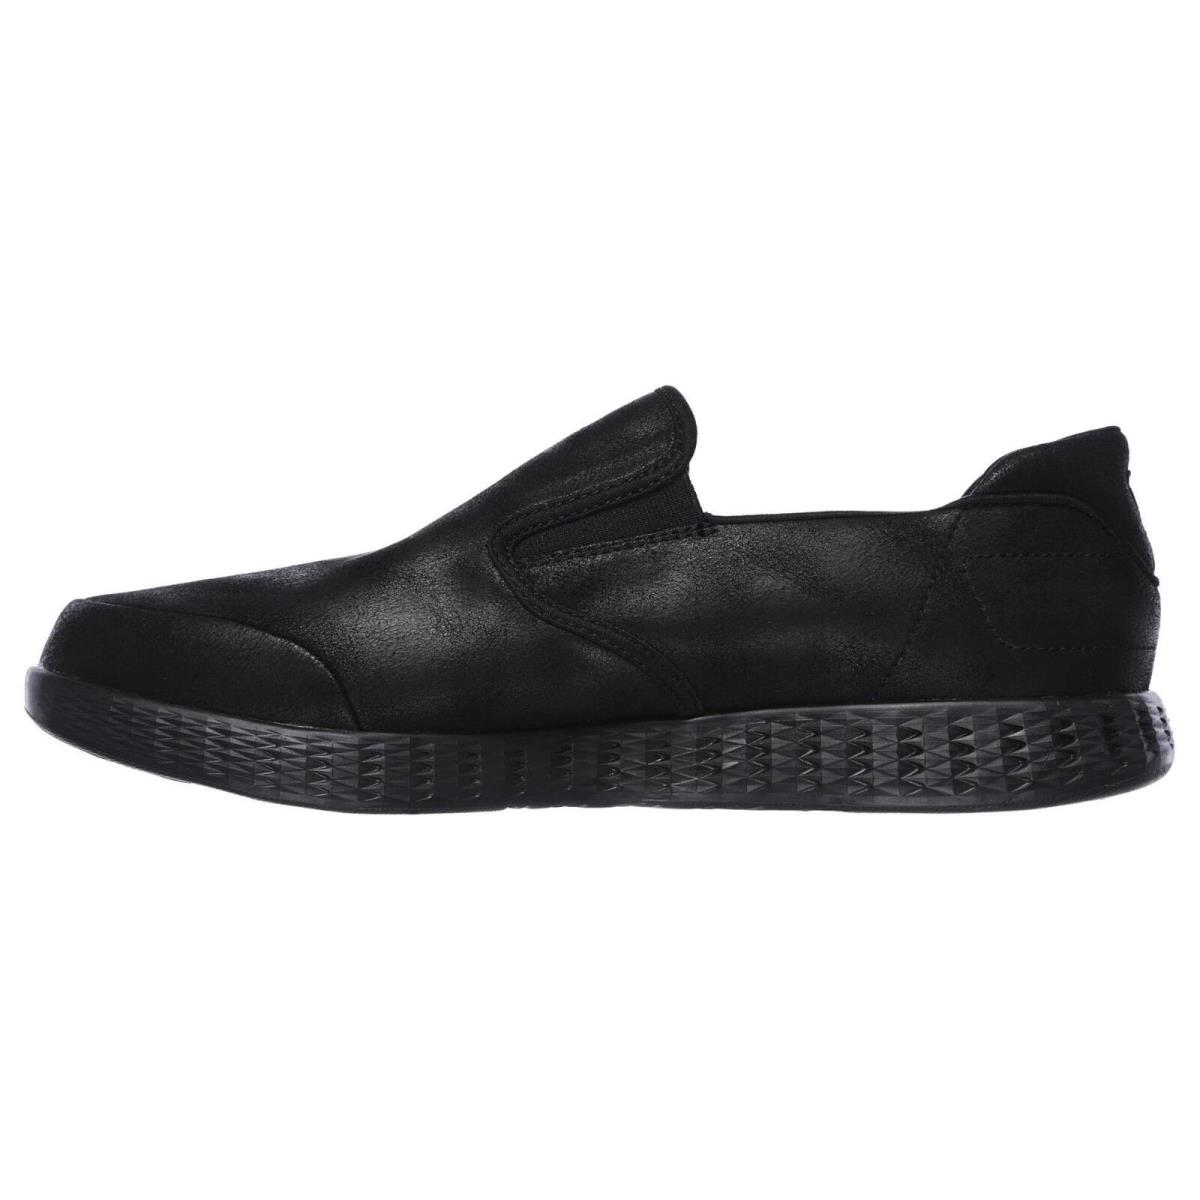 Skechers shoes SURPASS - Black 1